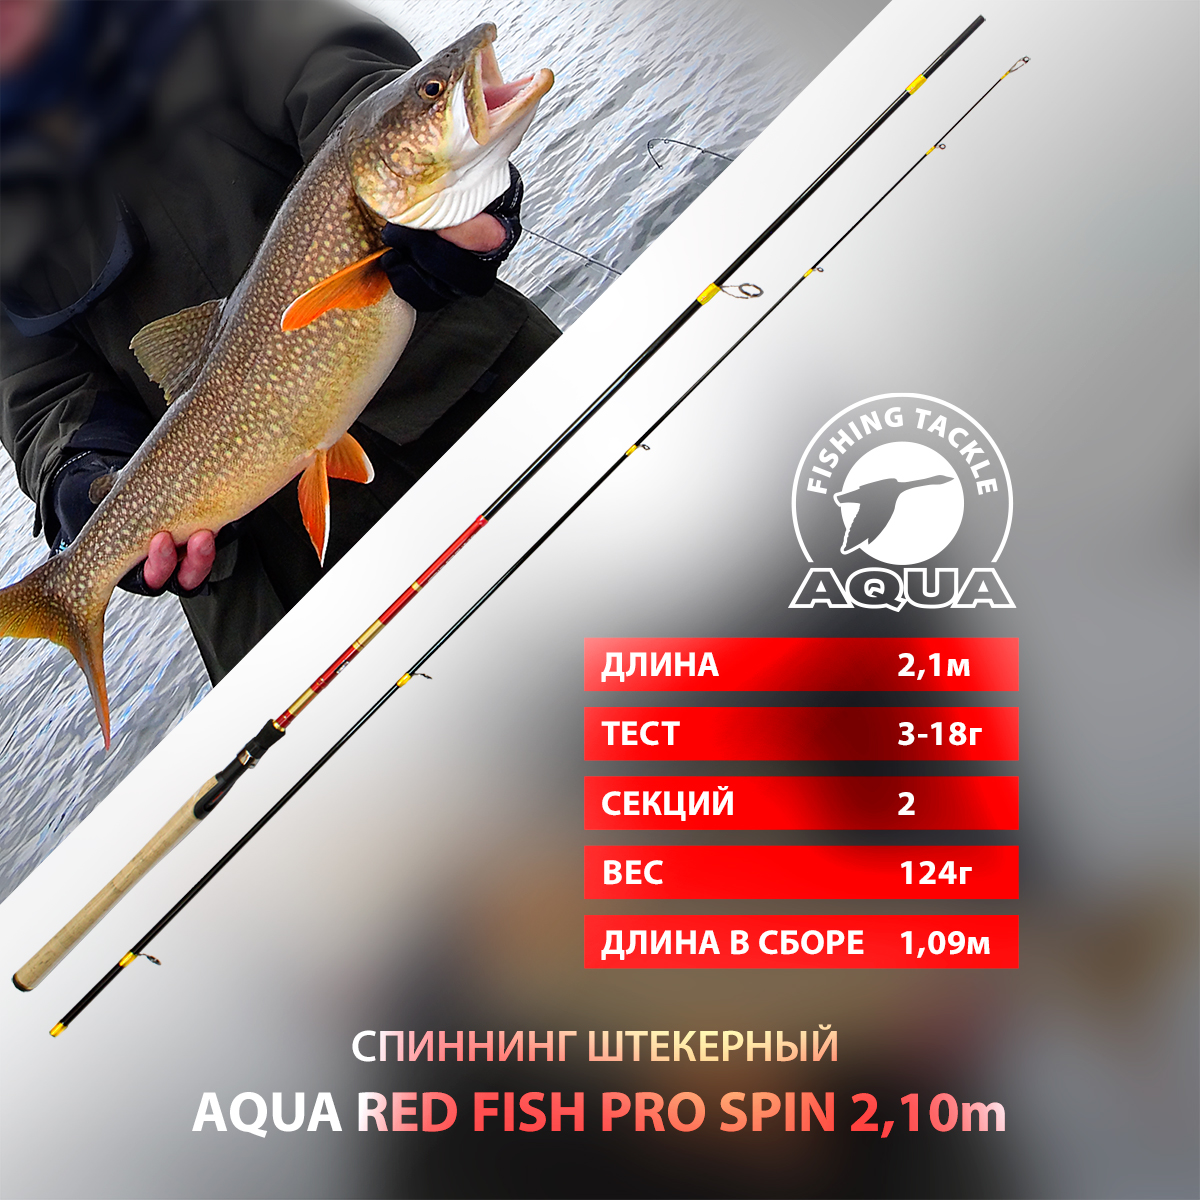 Спиннинг штекерный AQUA RED FISH PRO SPIN